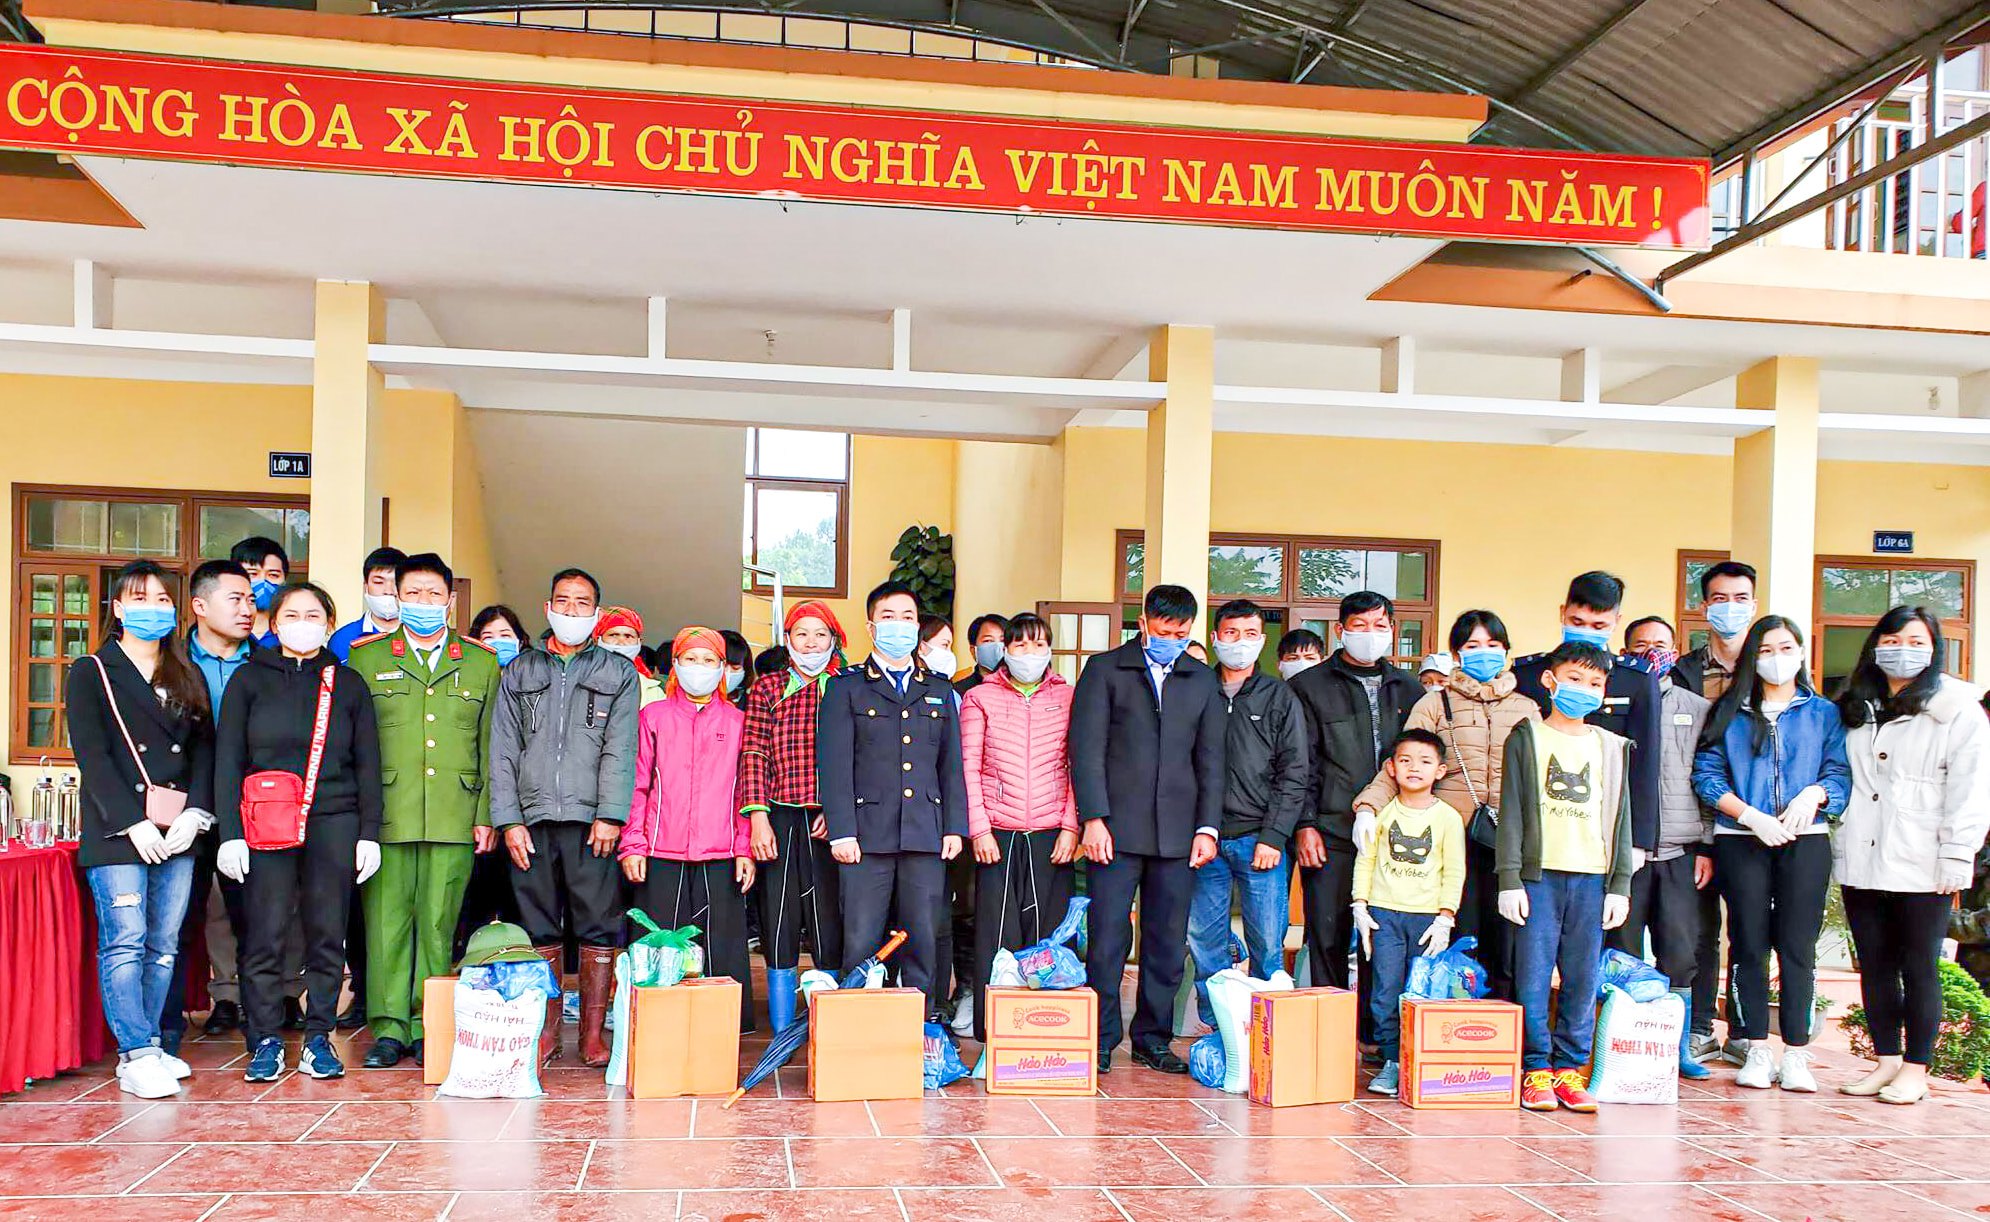 Đoàn cục Hải Quan chủ động xây dựng chương trình tình nguyện tại huyện Cao Lộc giúp đỡ gia đính khó khăn trong dịch bệnh